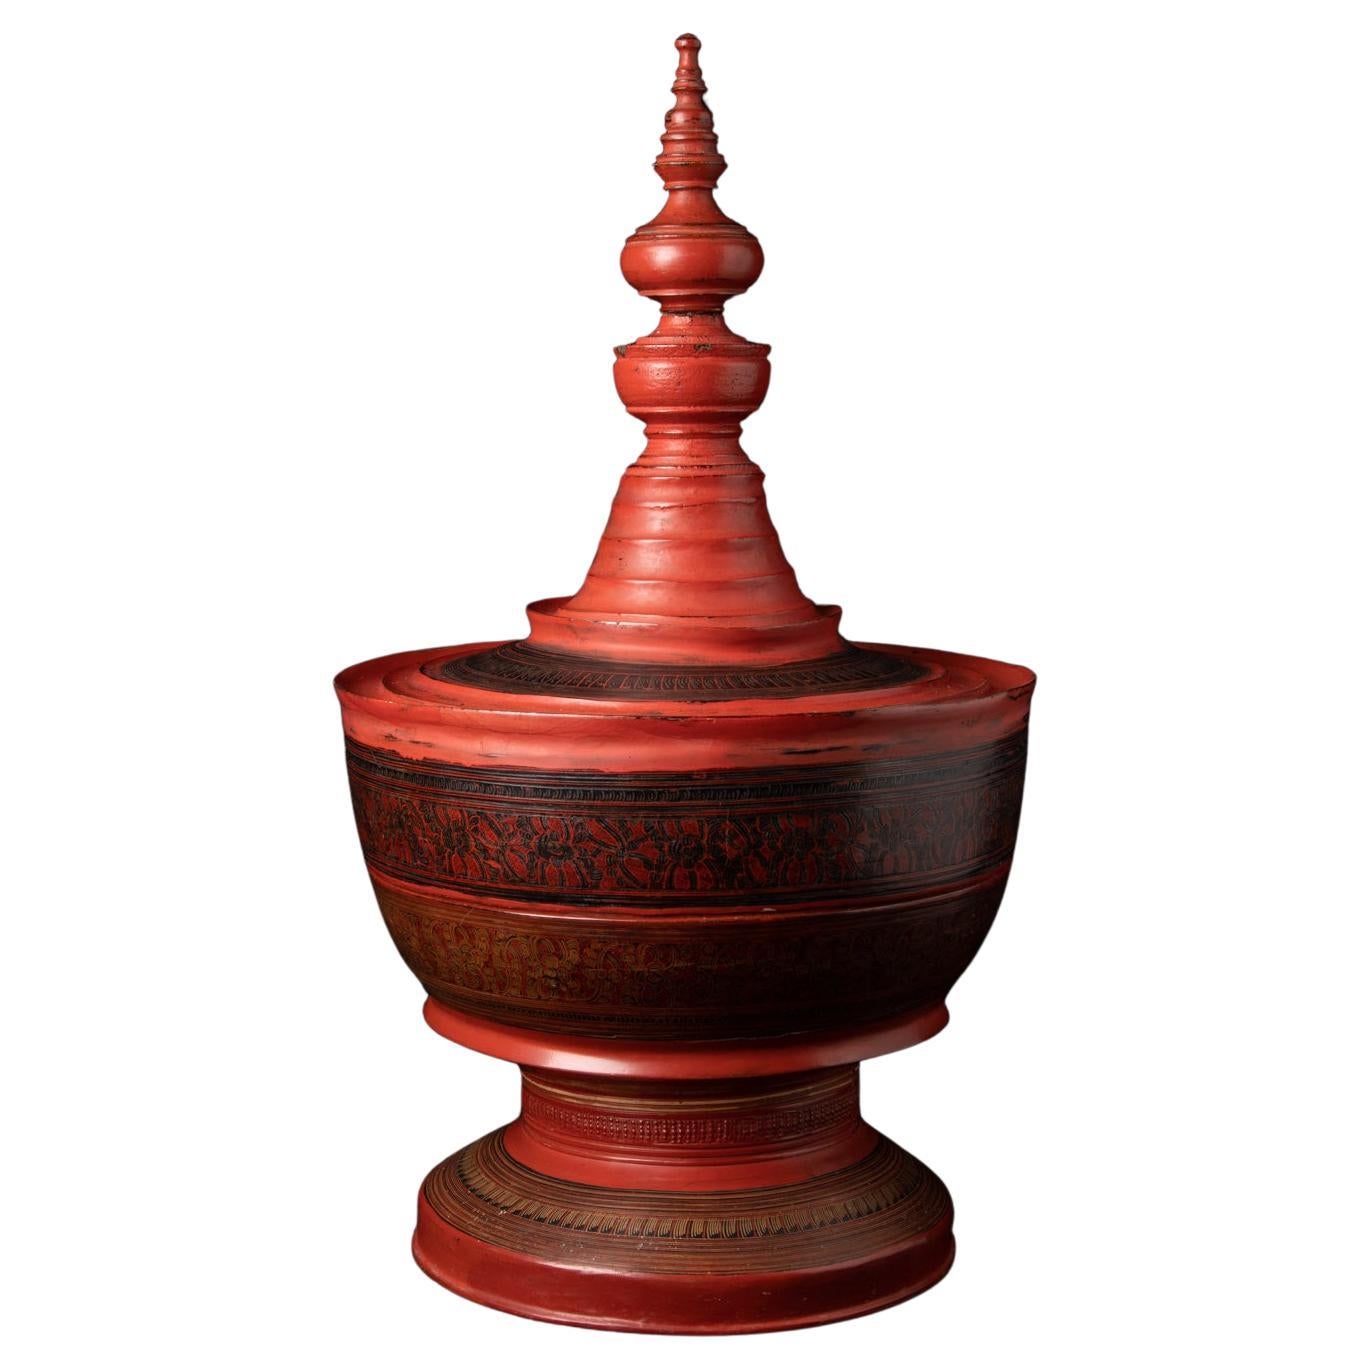  Vase birman ancien du 19ème siècle provenant de Birmanie - Bouddhas originaux